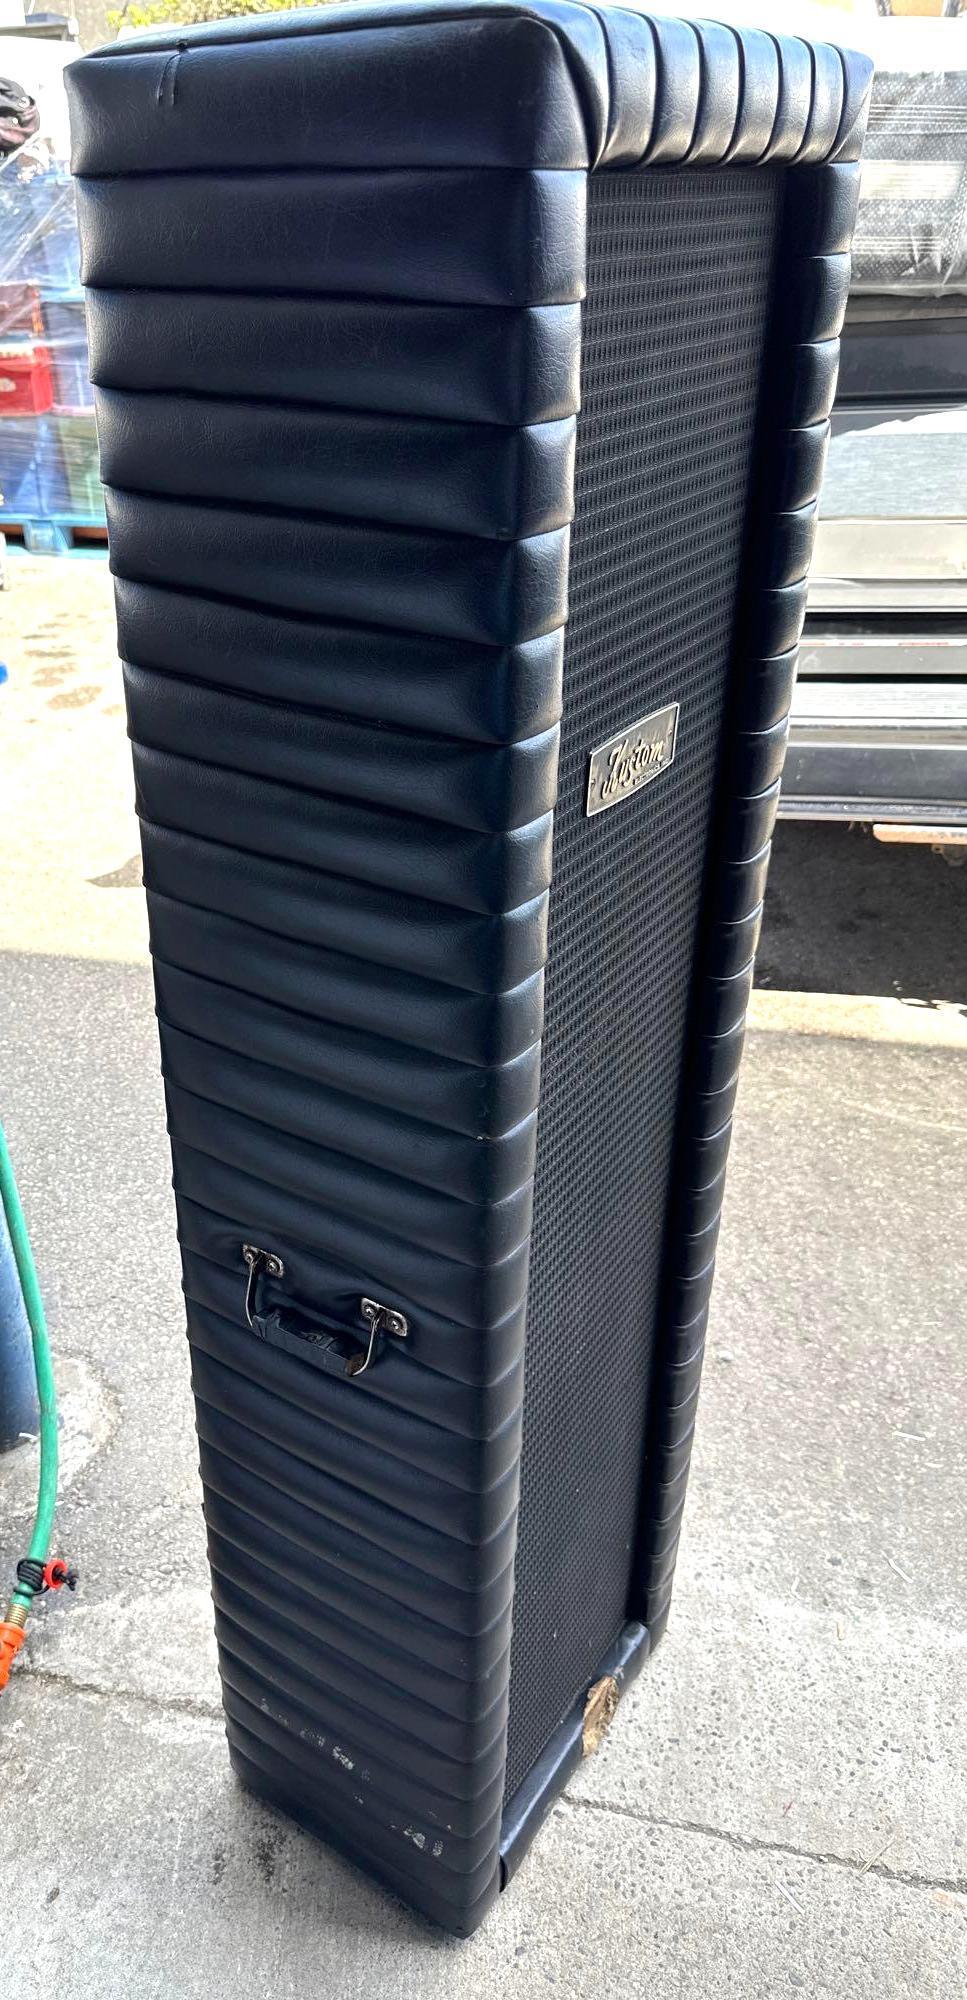 Vintage Kustom Speaker- 5ft tall- Untested